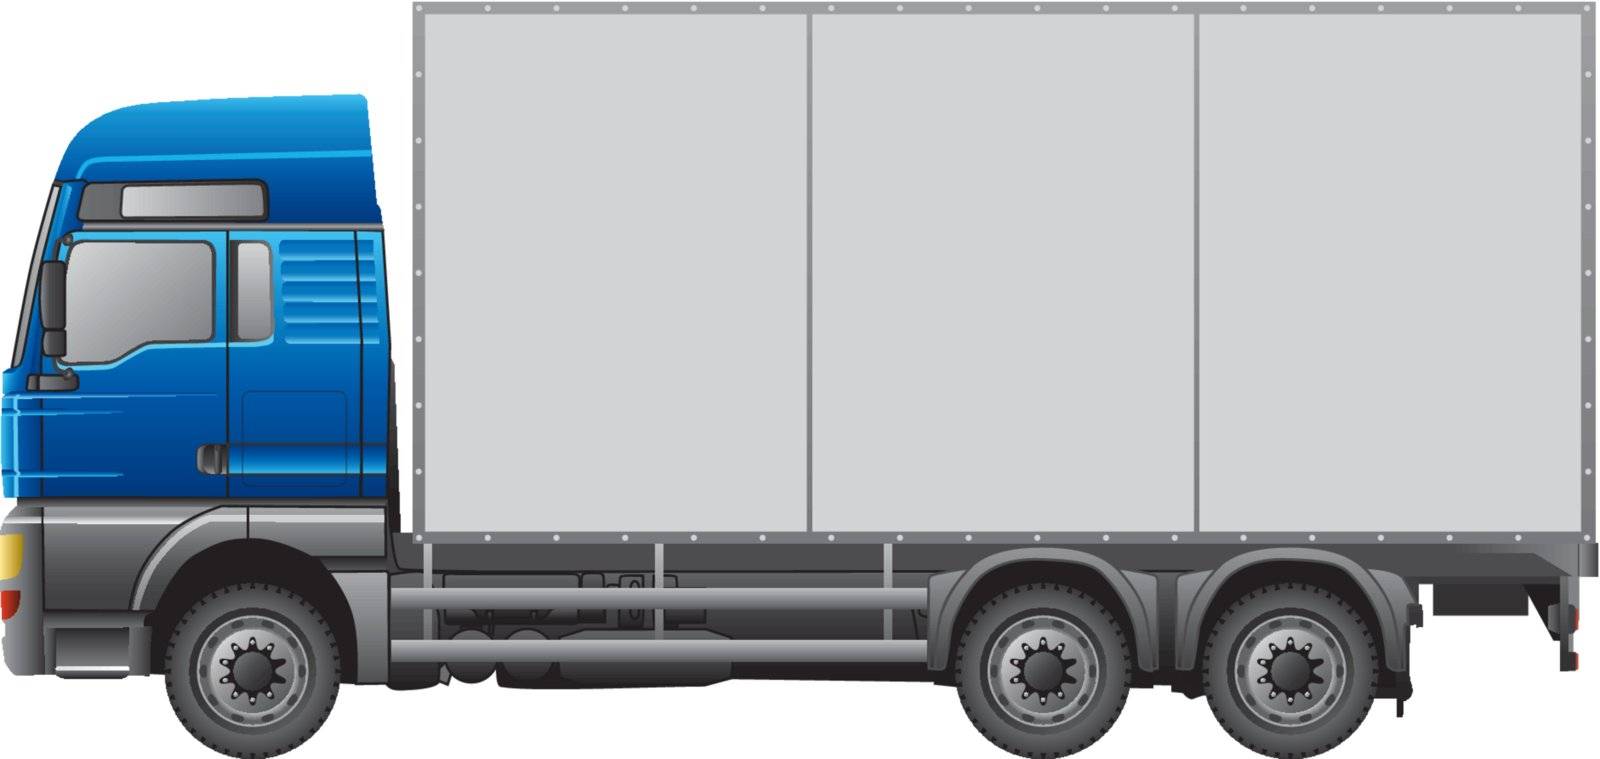 Semi-Trailer Truck by melledy